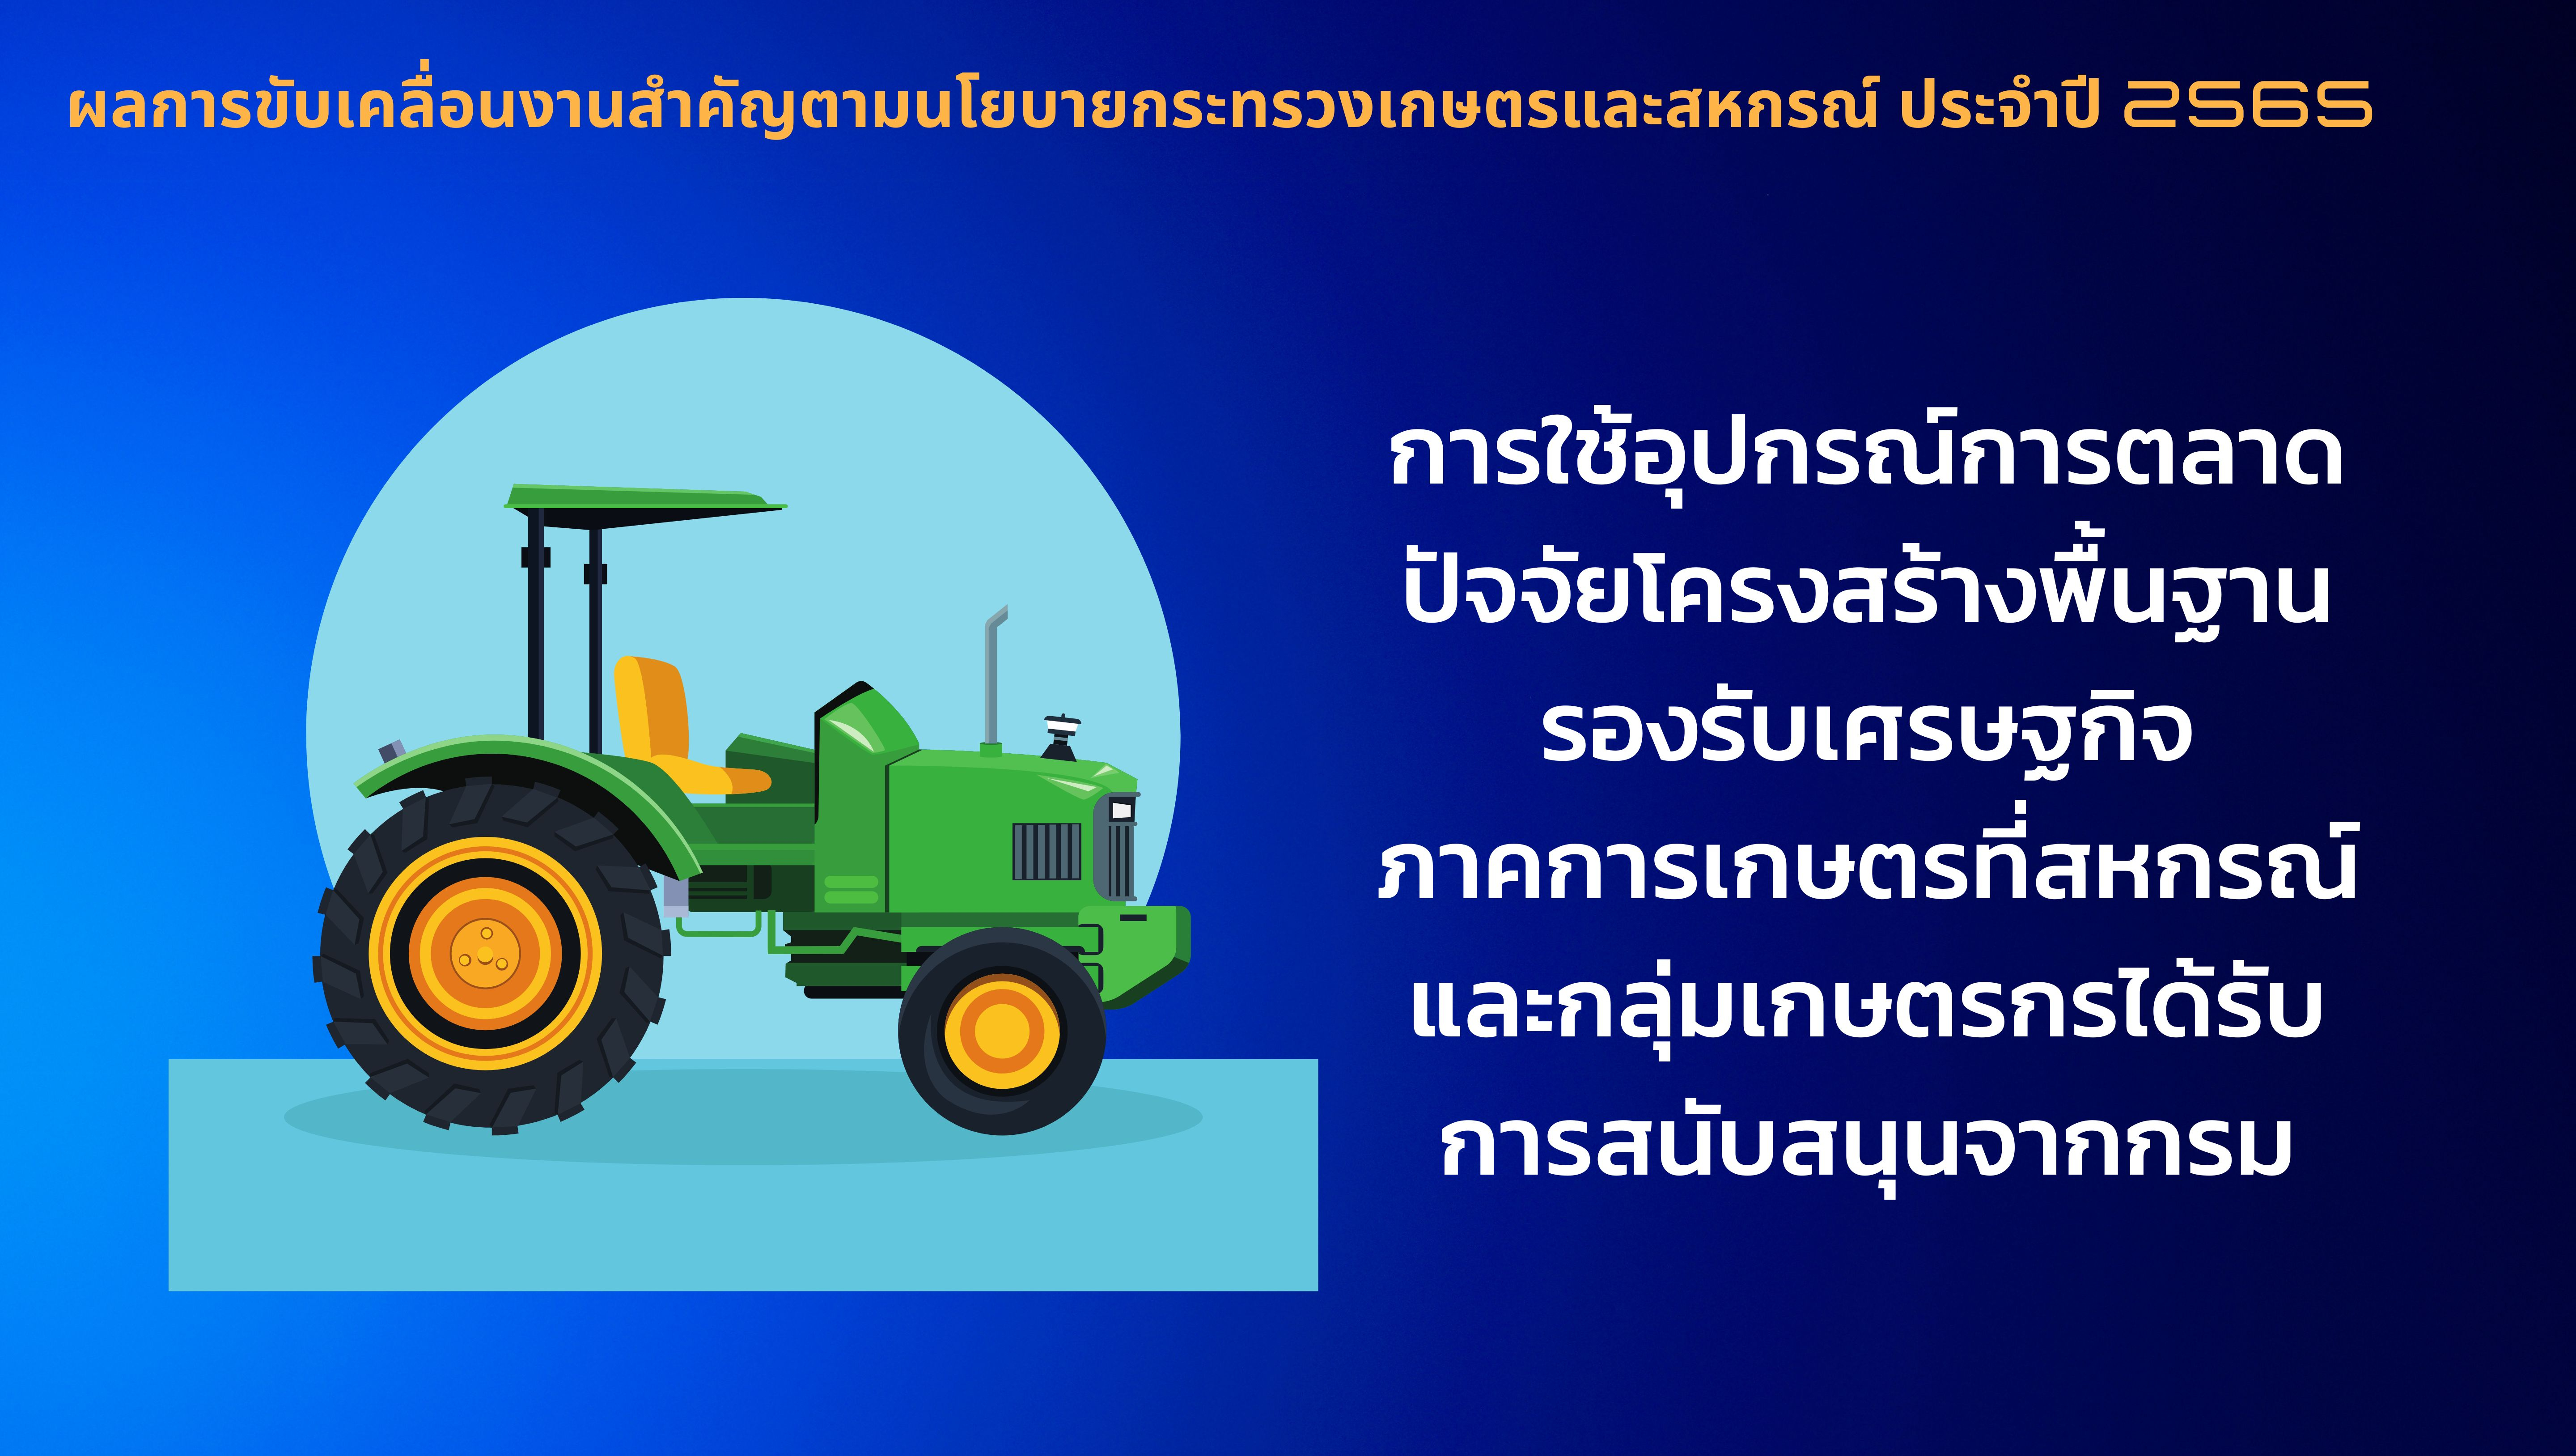 การใช้อุปกรณ์การตลาด  ปัจจัยโครงสร้างพื้นฐานรองรับเศรษฐกิจภาคการเกษตรที่สหกรณ์ และกลุ่มเกษตรกรได้รับการสนับสนุนจากกรมส่งเสริมสหกรณ์ ปีงบประมาณ 2565